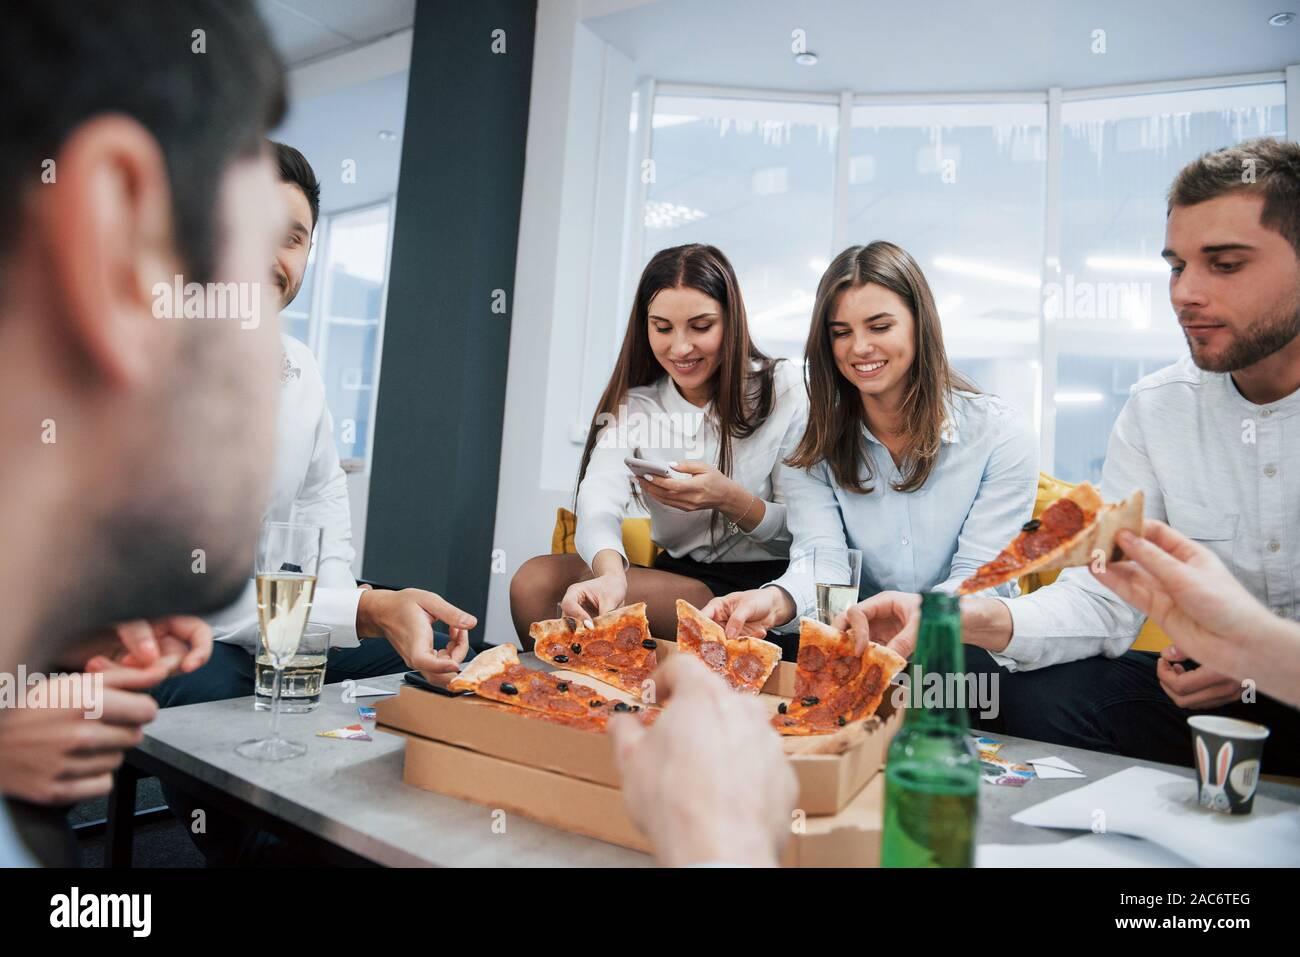 Avoir du bon temps. Manger des pizzas. La célébration de traiter avec succès. Les jeunes travailleurs de bureau assis près de la table avec de l'alcool Banque D'Images